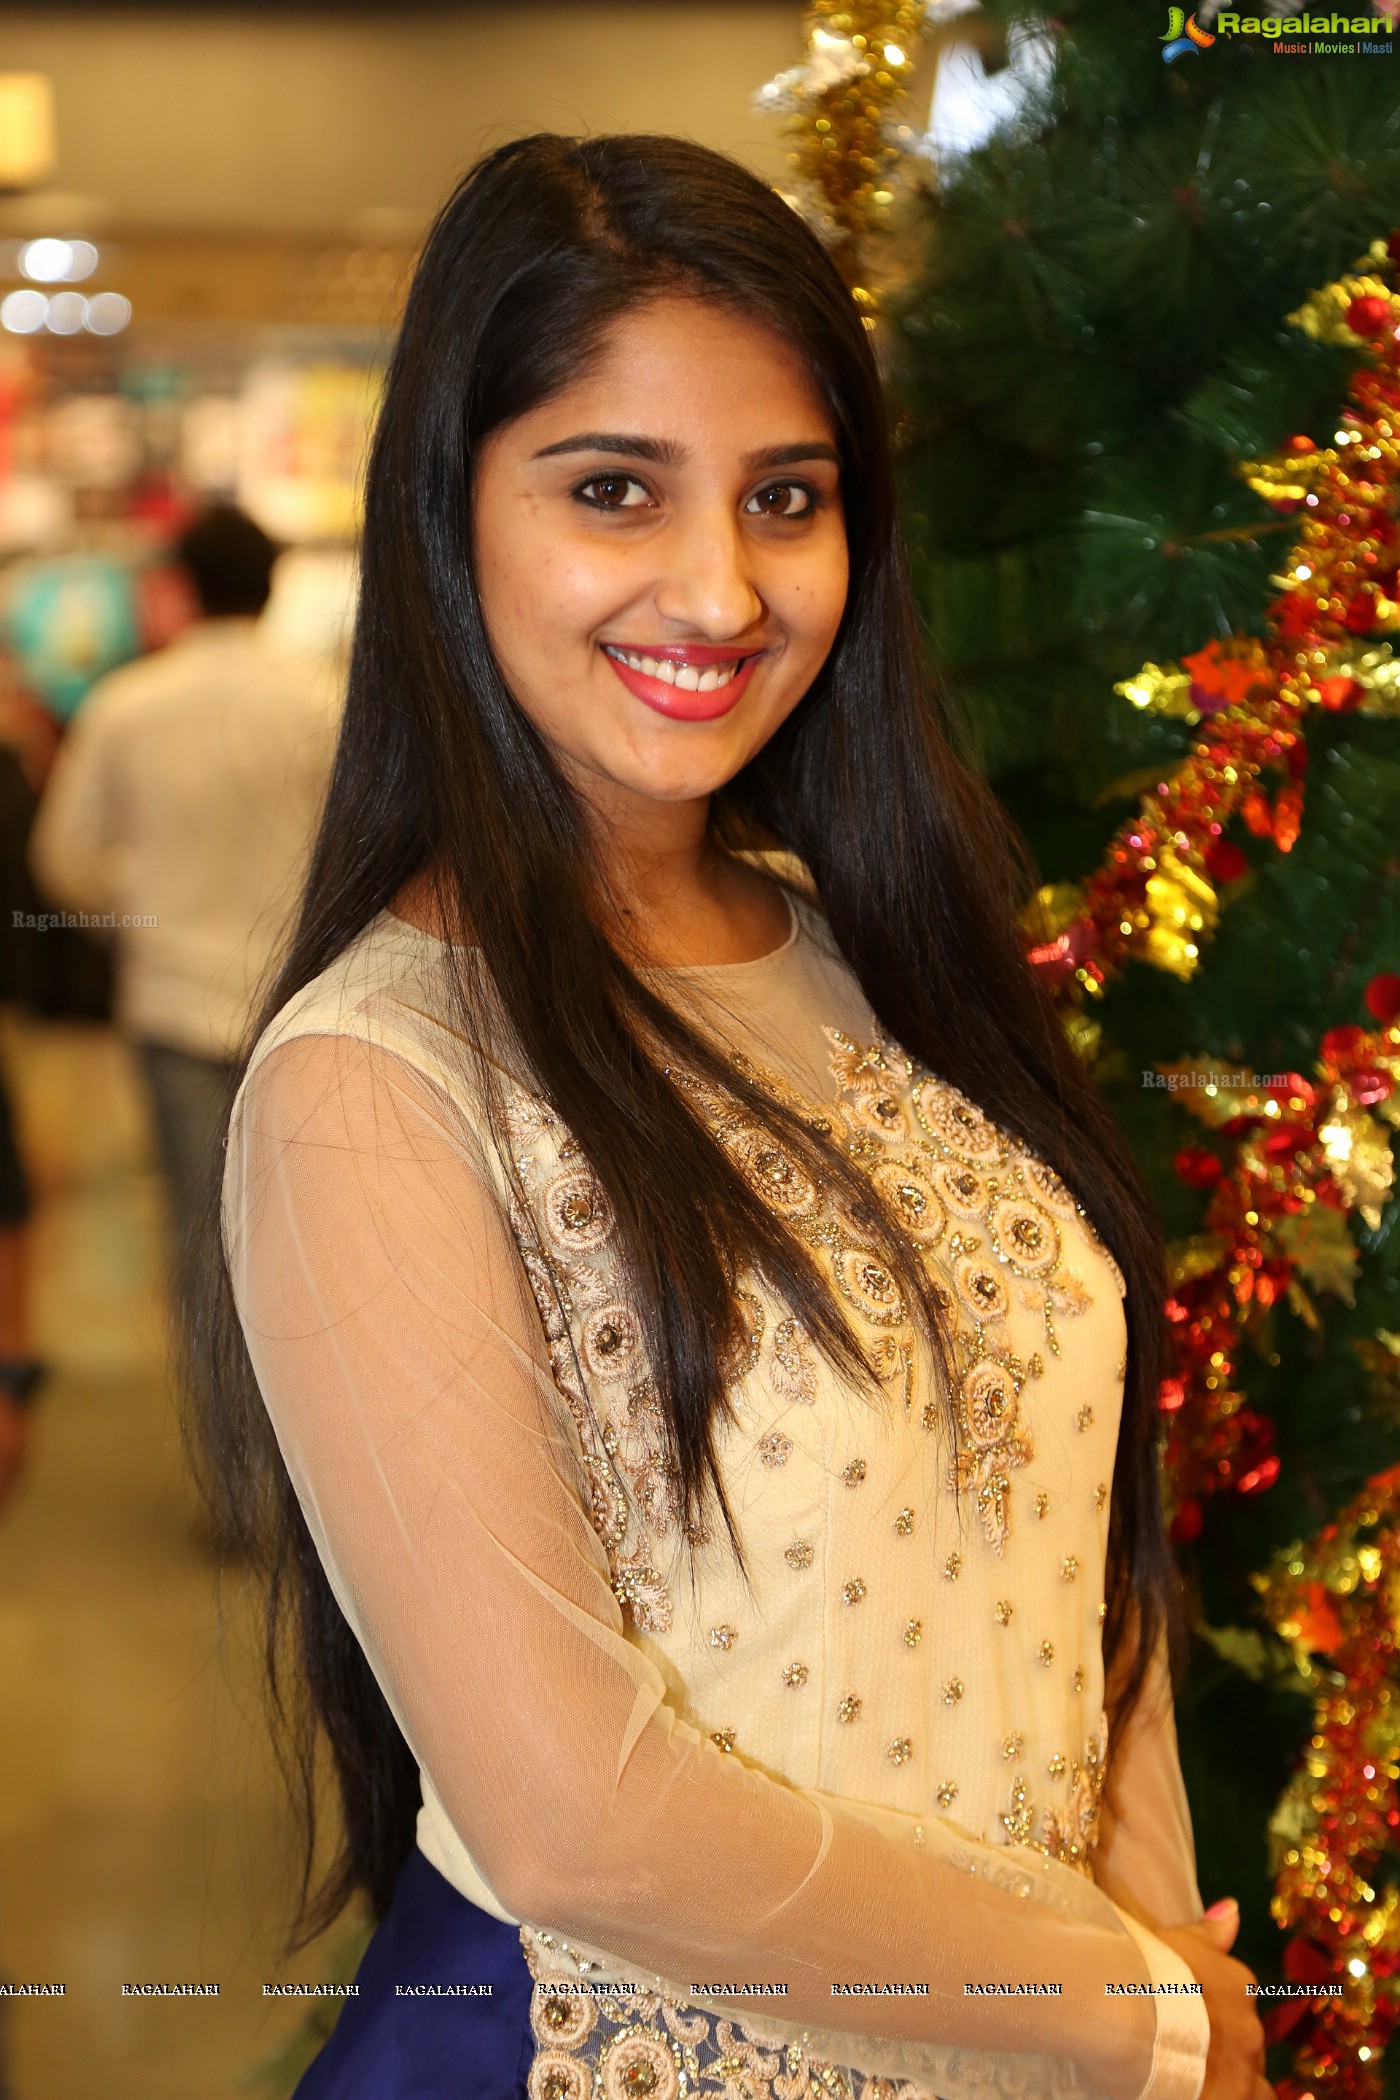 Meghana Lokesh at Big Bazaar Christmas Festivities (Posters)